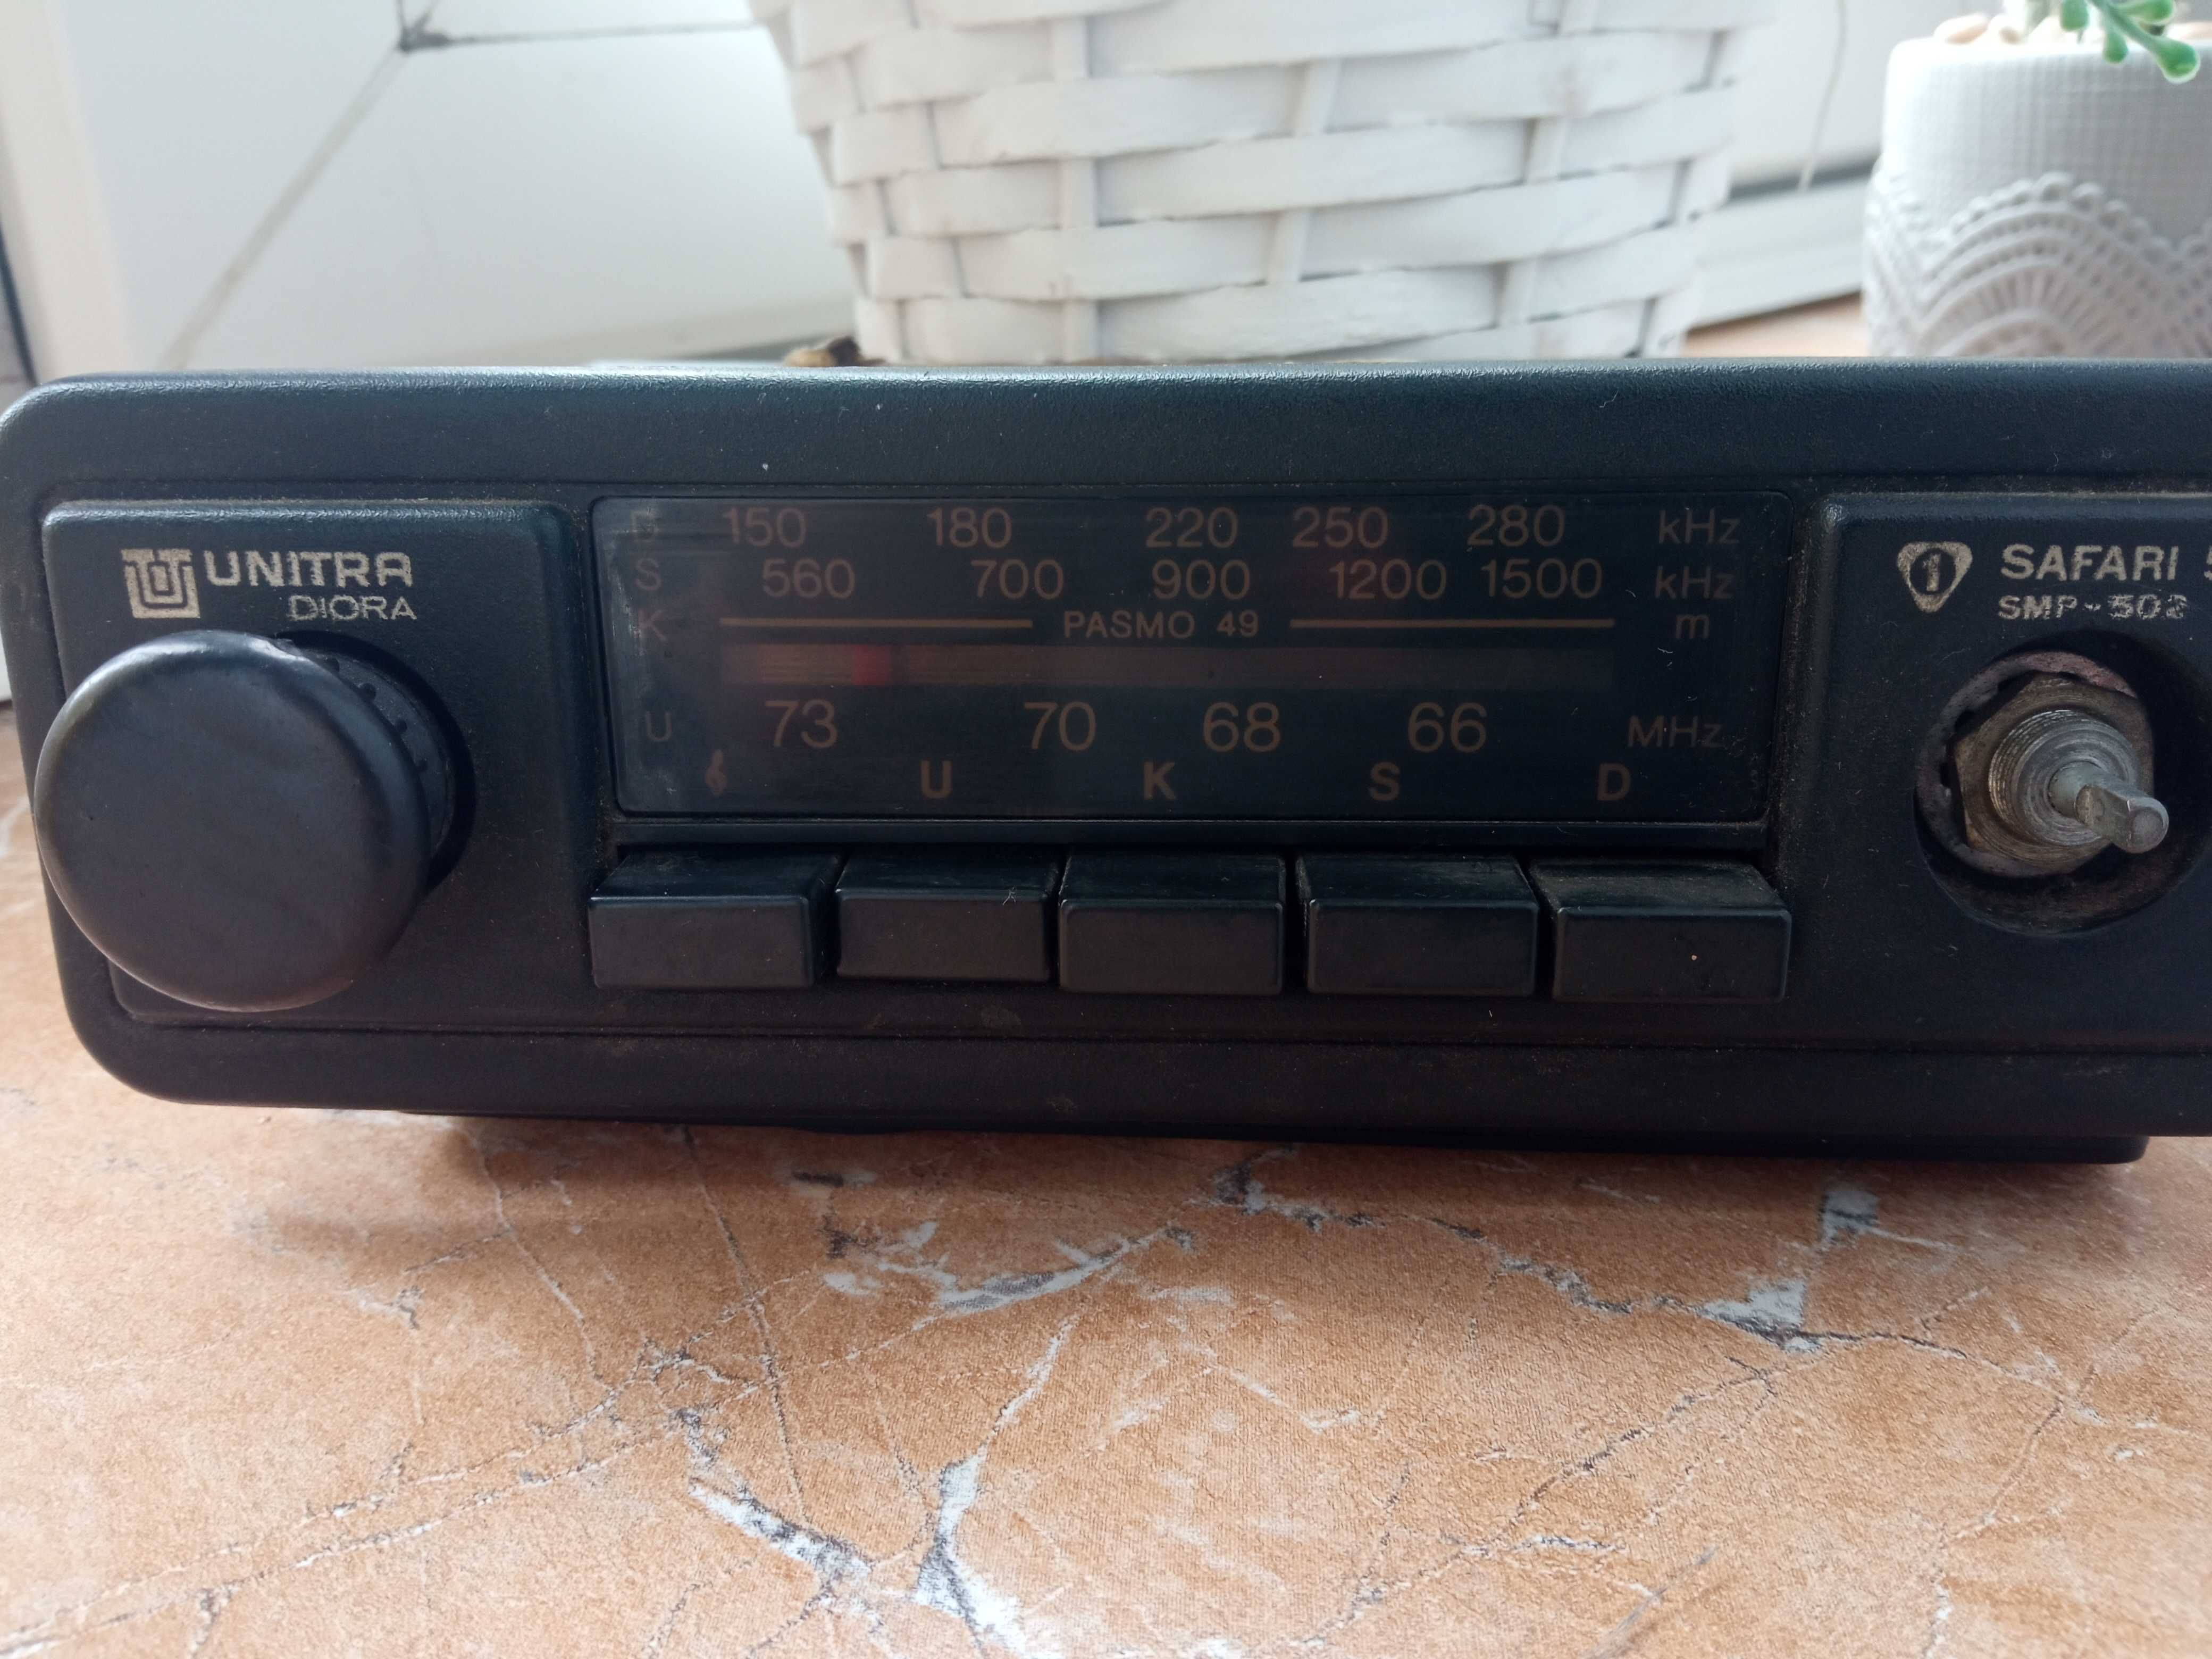 Radio do fiat126p Safari 5 SMP-502